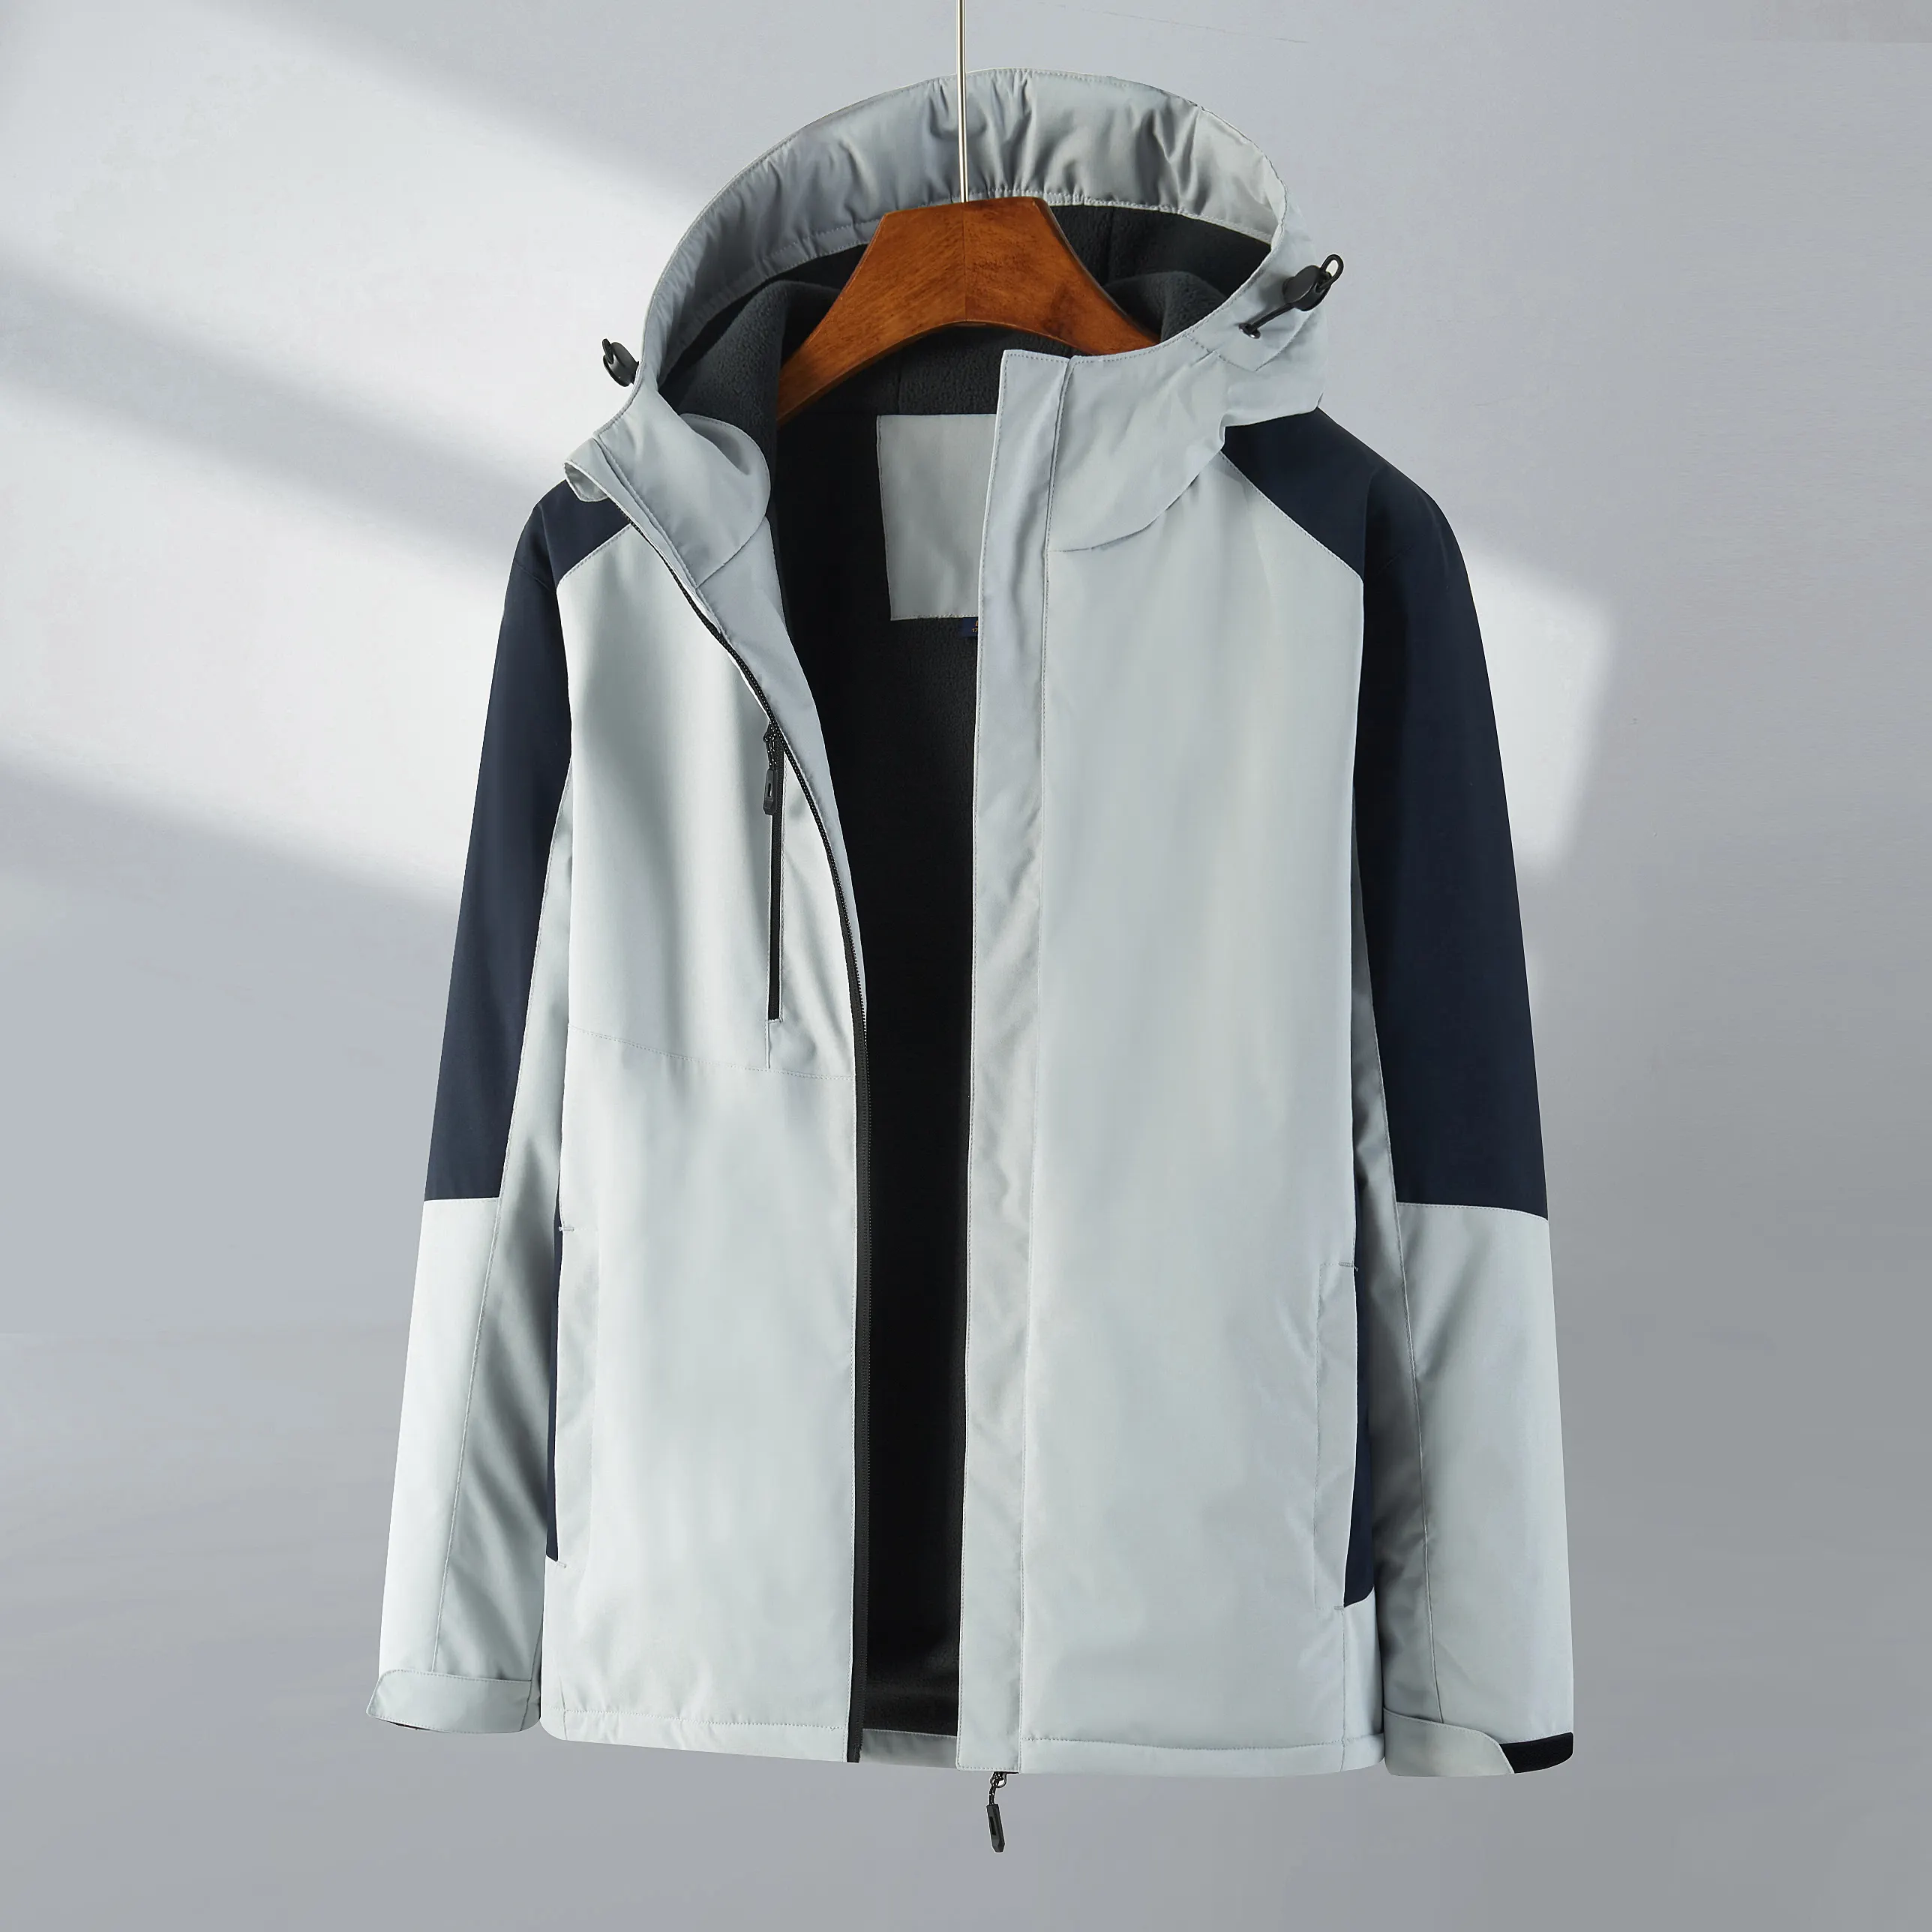 Nuevo producto personalizado deporte Unisex una pieza de lana al aire libre senderismo cortavientos chaqueta impermeable